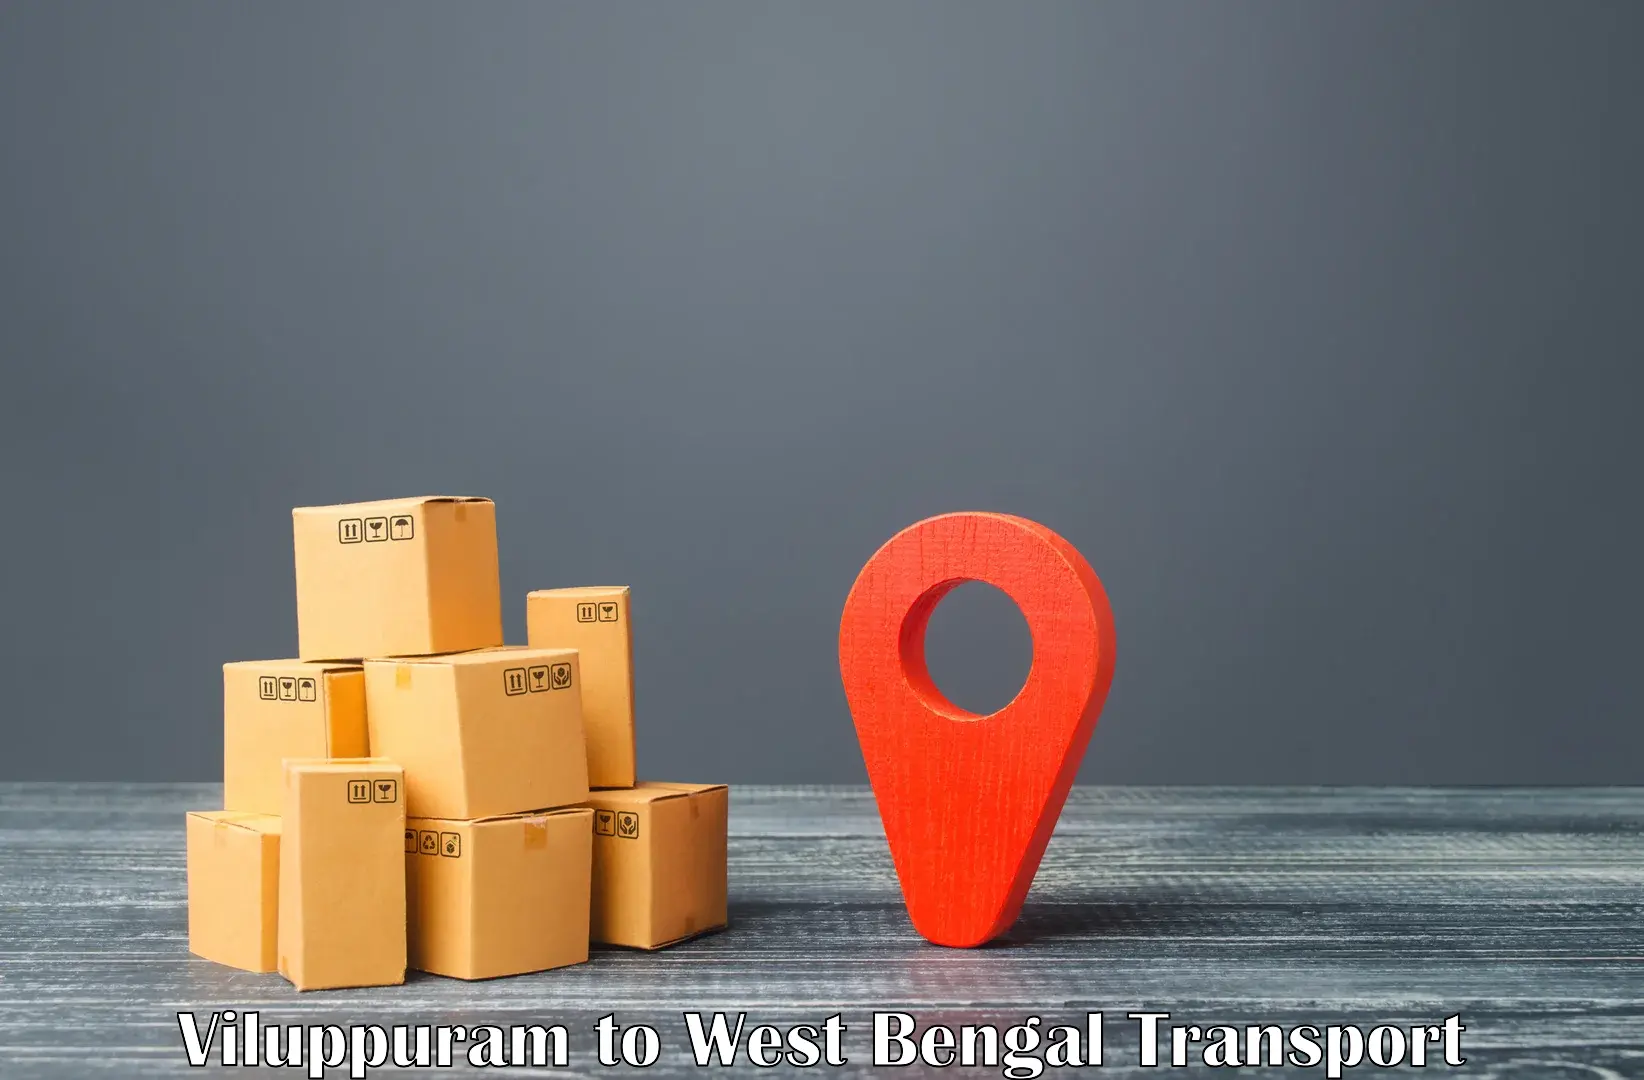 Road transport online services Viluppuram to Farakka